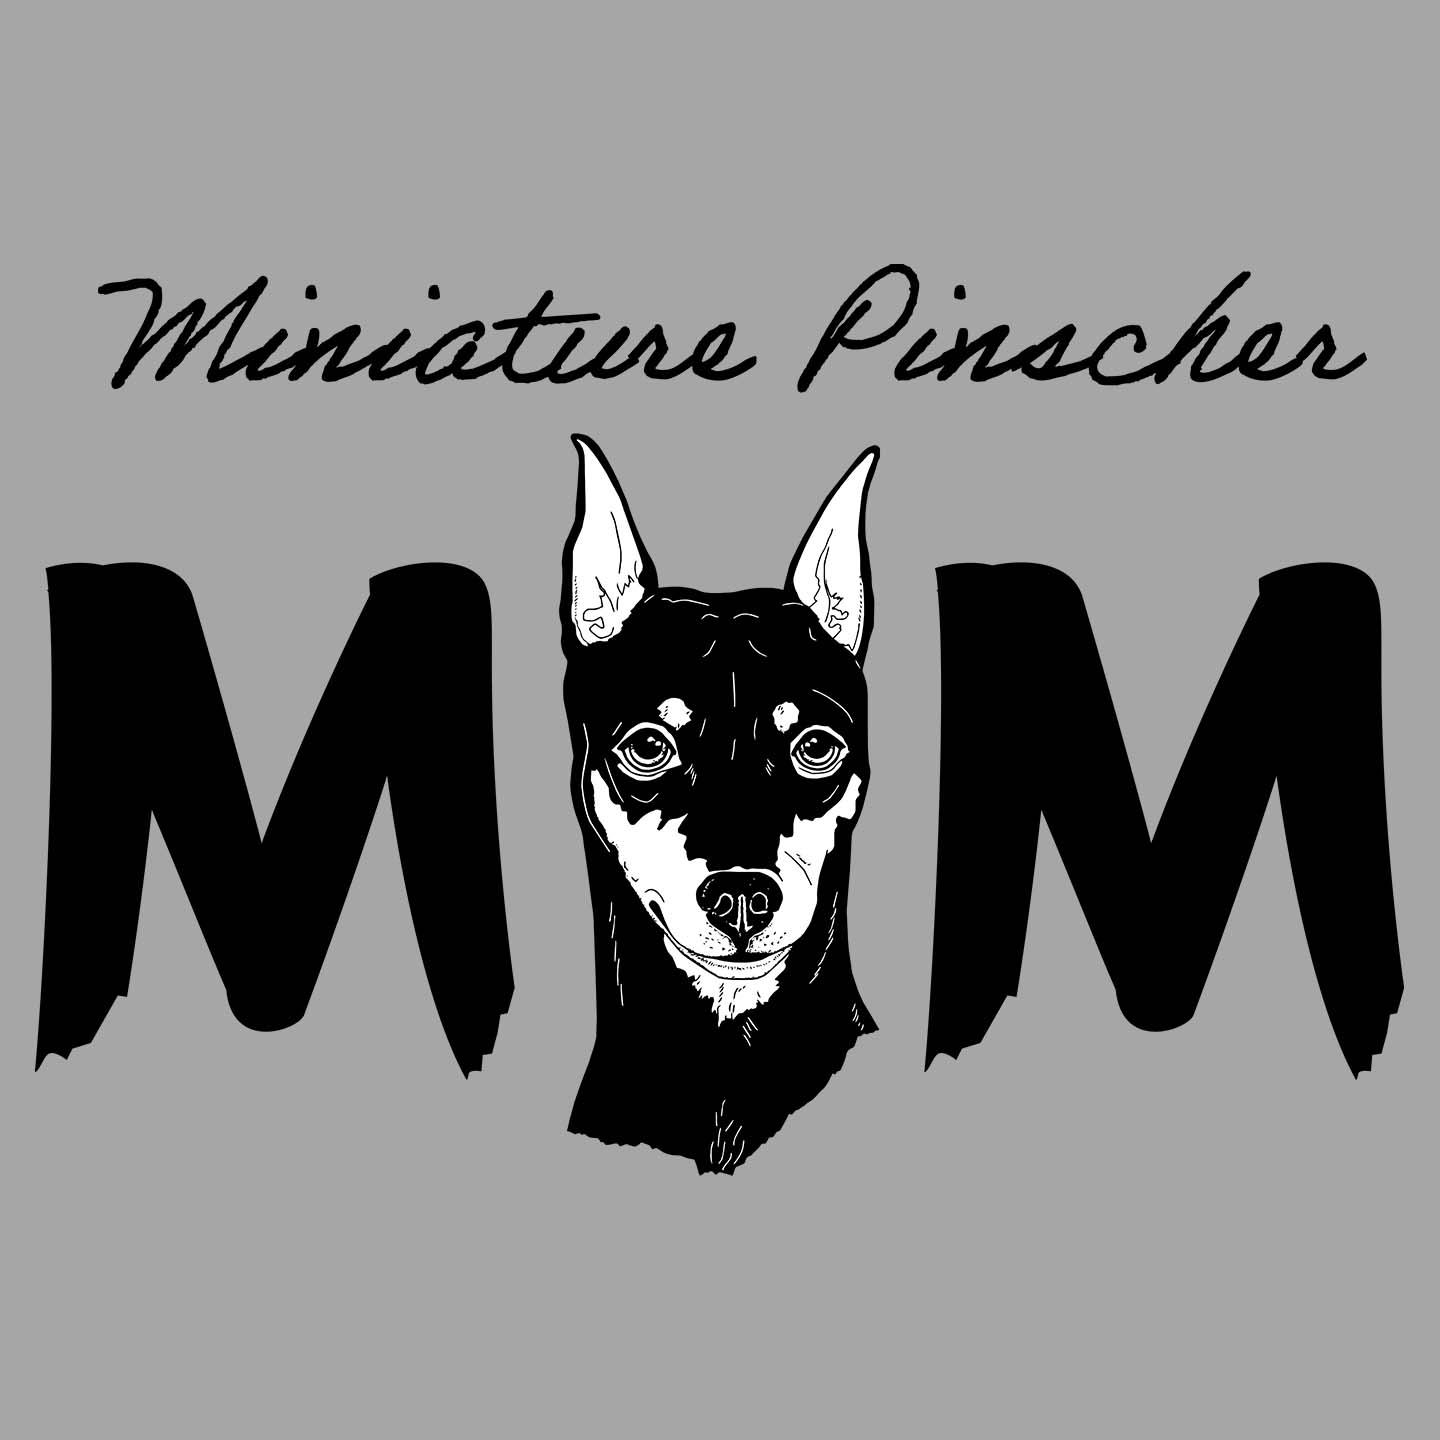 Miniature Pinscher Breed Mom - Women's V-Neck T-Shirt